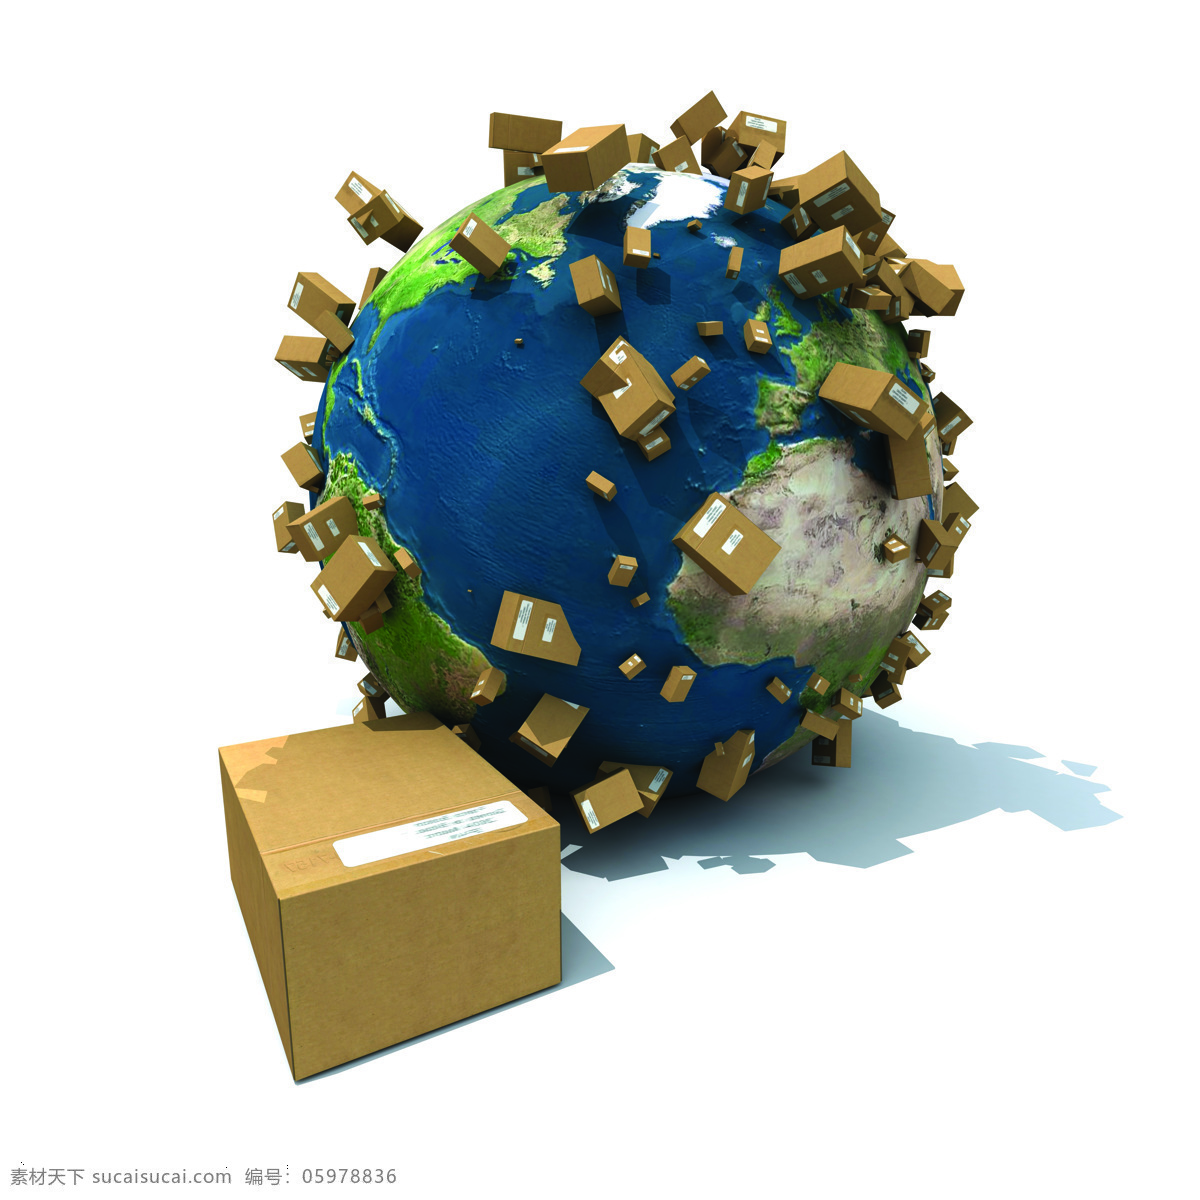 运输 物流 货运 货物运输 纸箱 箱子 地球 汽车图片 现代科技